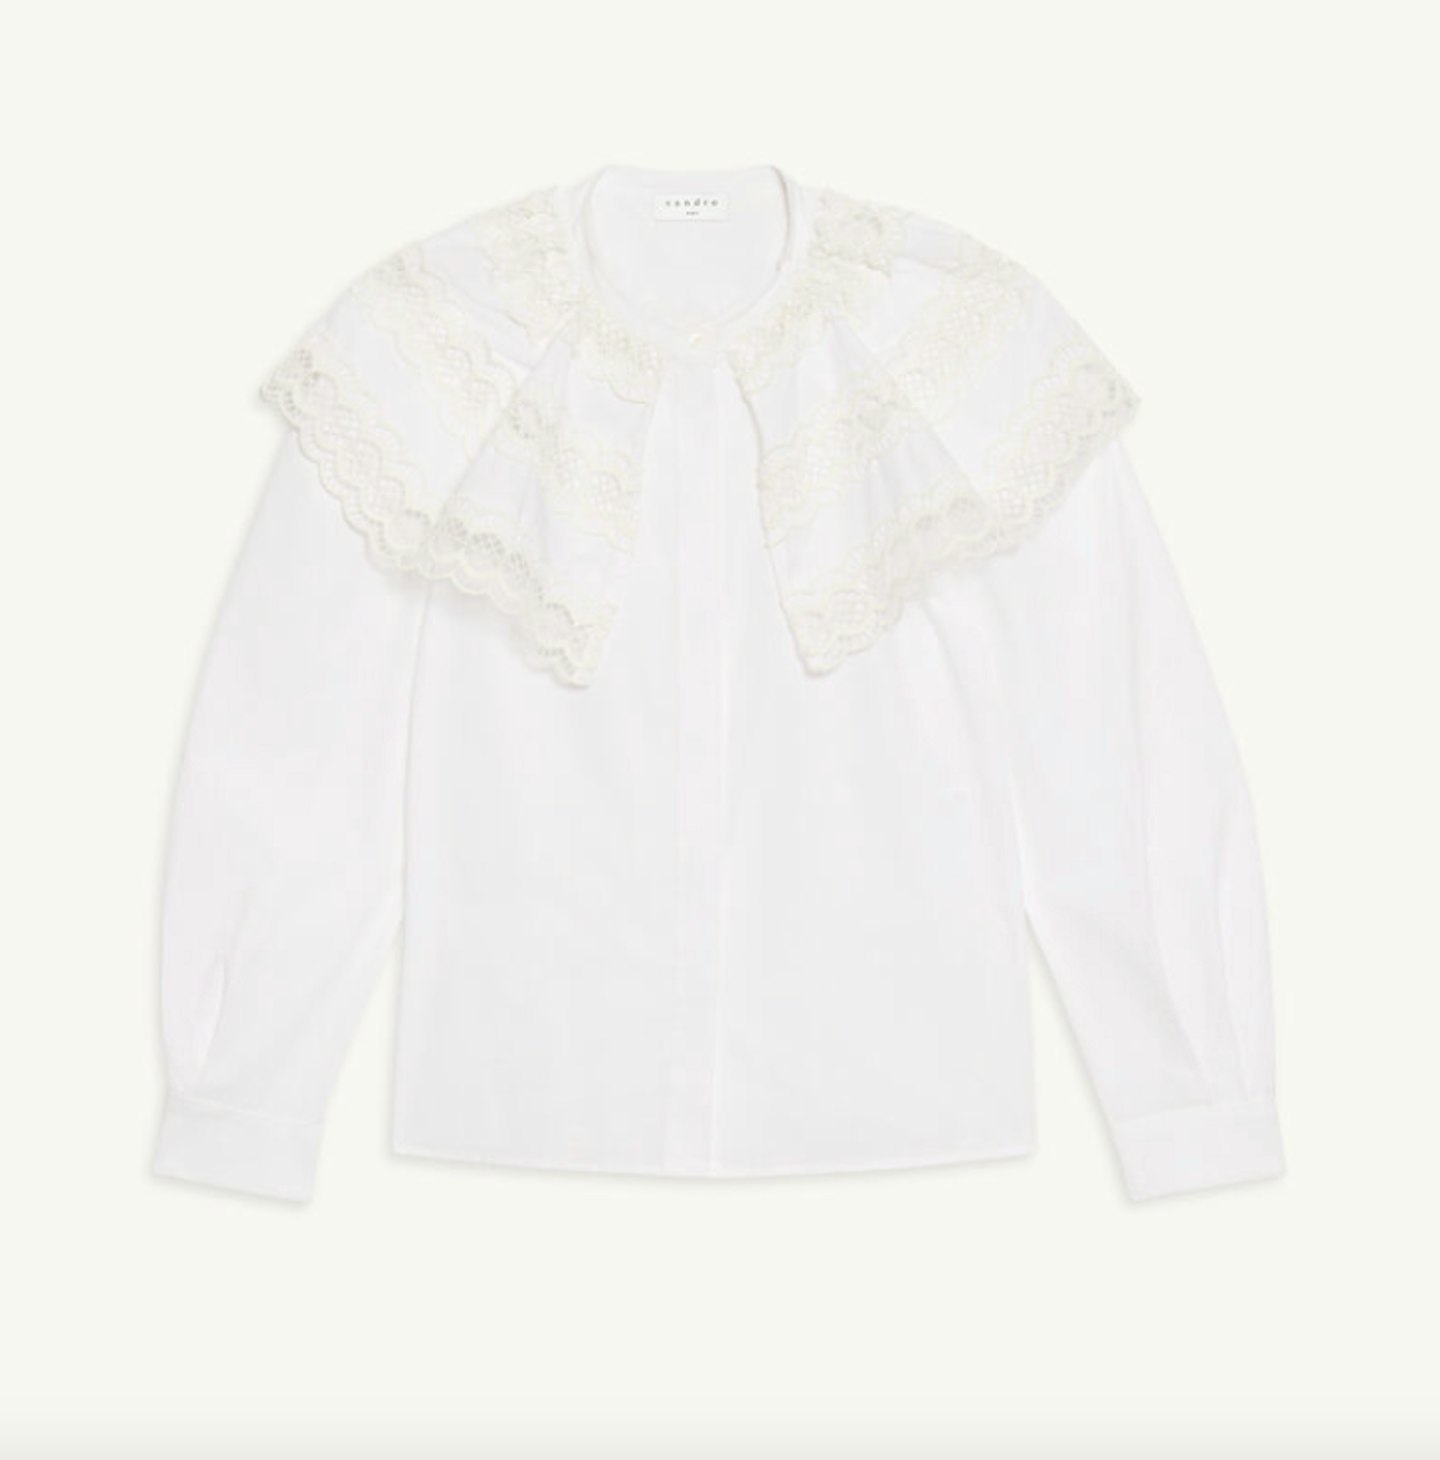 Sandro, Poplin Shirt With Ruffle Collar, £249